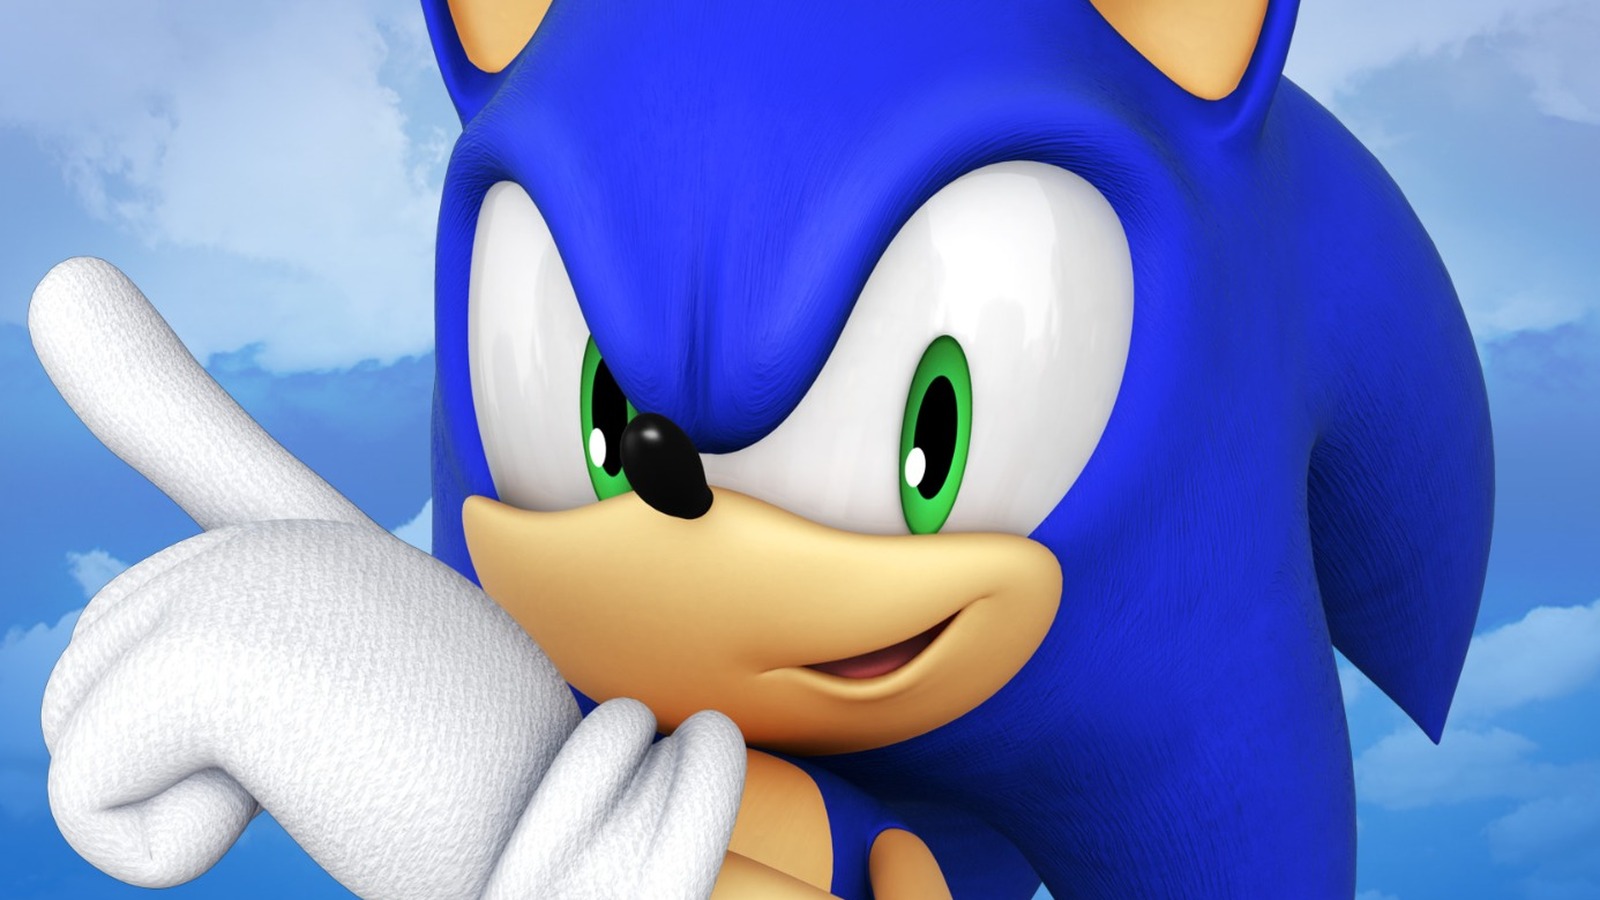 Sonic Origins Plus - Launch Trailer 